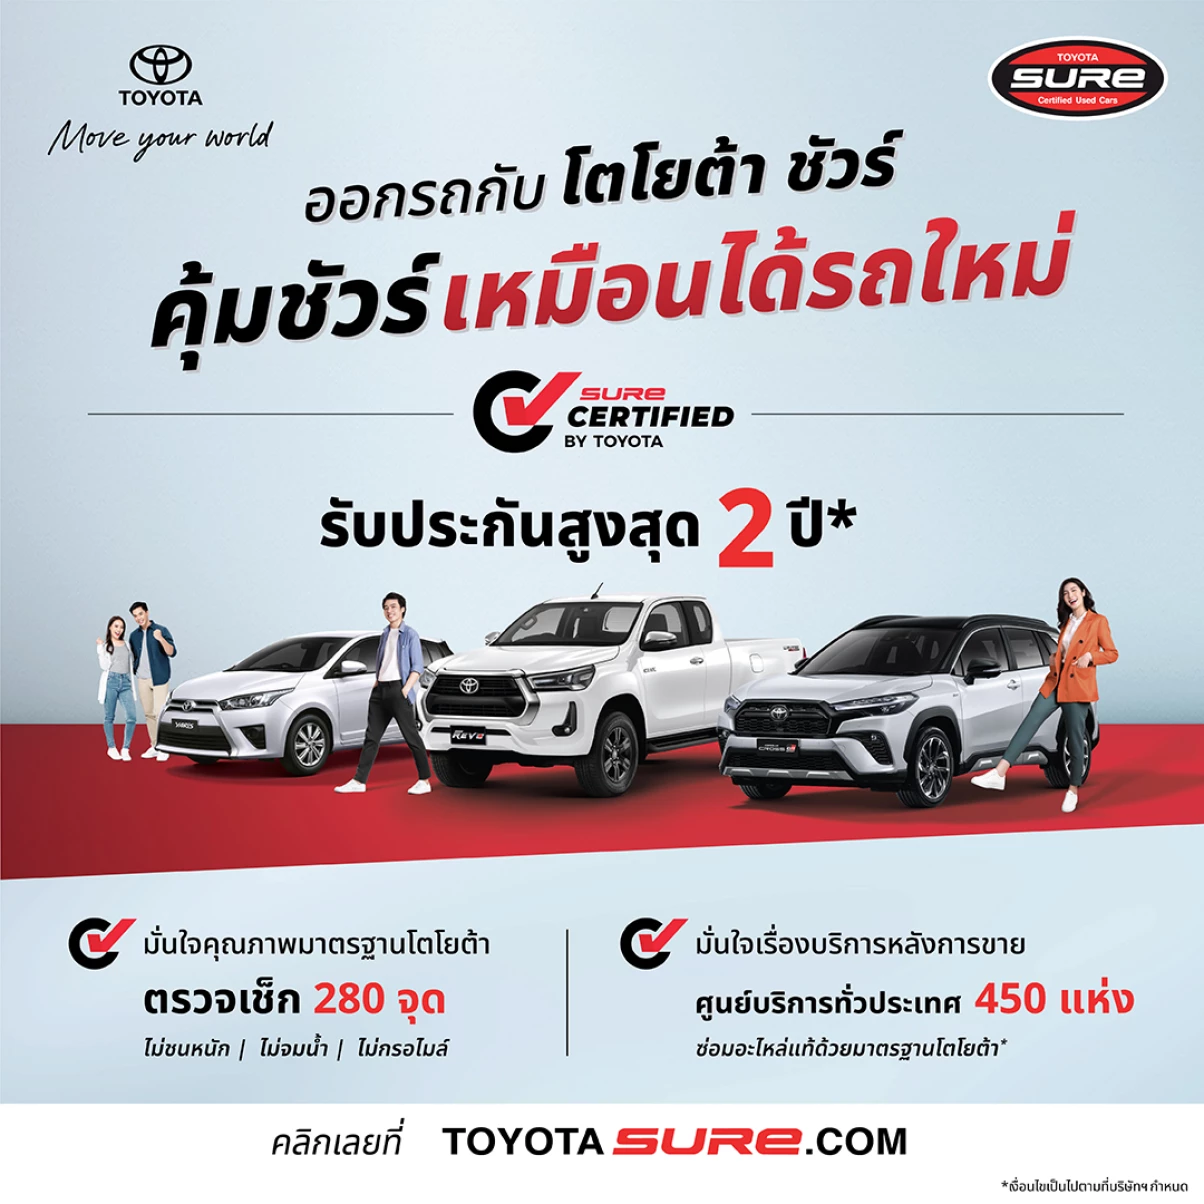 มั่นใจรถมือสองคุณภาพดี กับ โตโยต้า ชัวร์ ด้วยผลิตภัณฑ์ใหม่ “Toyota Sure Certified” เพิ่มการรับประกันคุณภาพ สูงสุด 2 ปี 40,000 กม.!